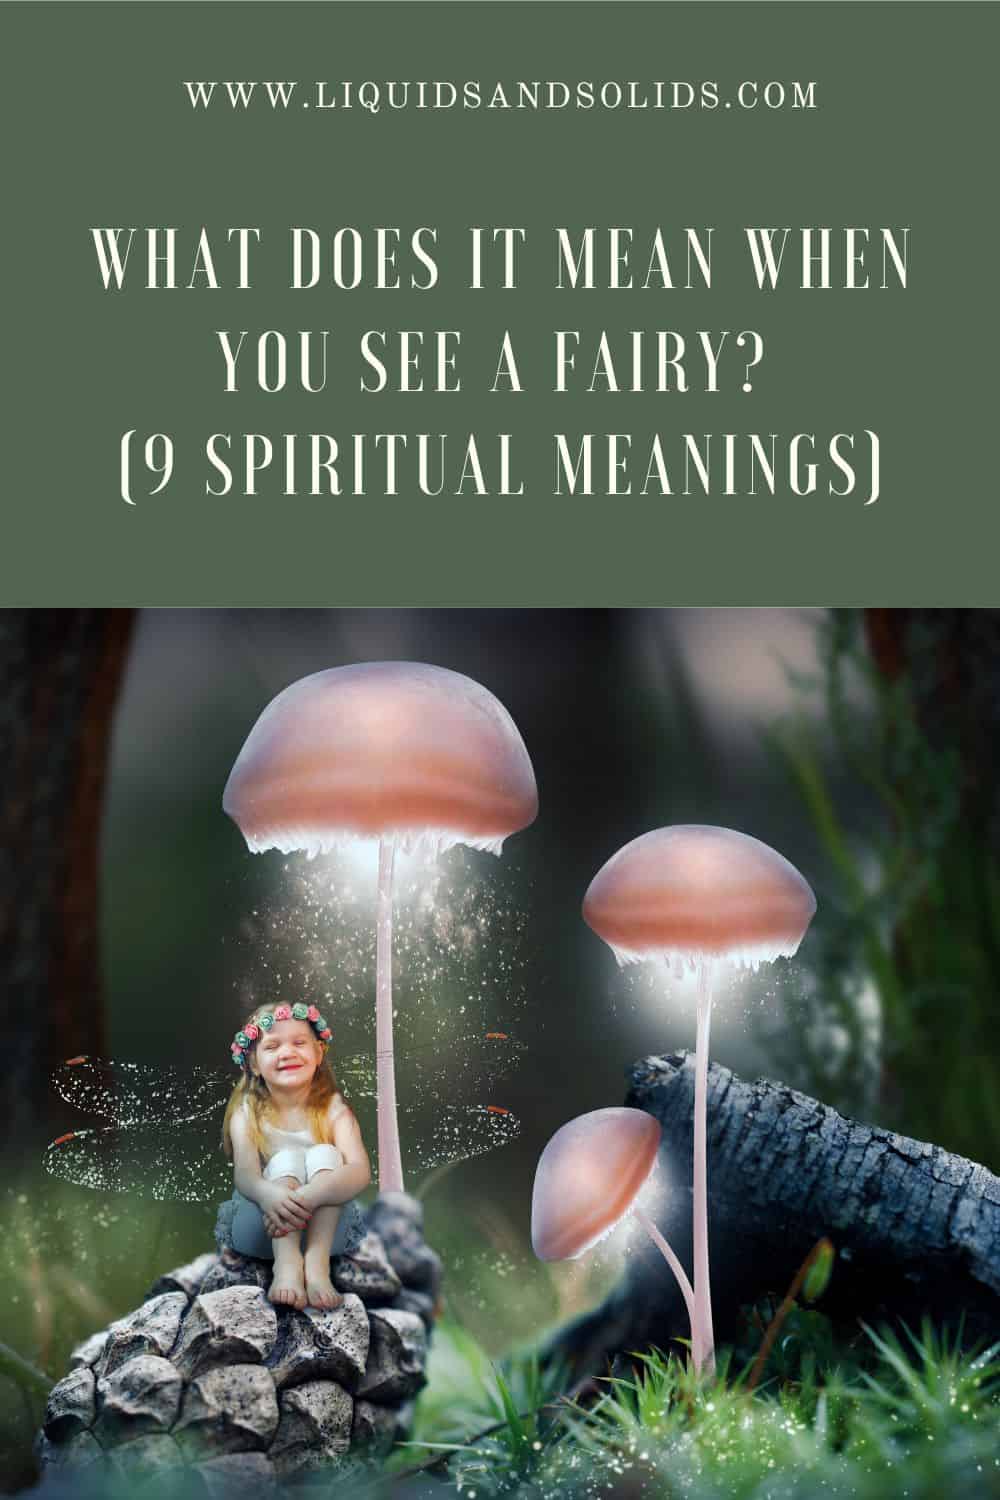  Ce que signifie voir une fée (9 significations spirituelles)